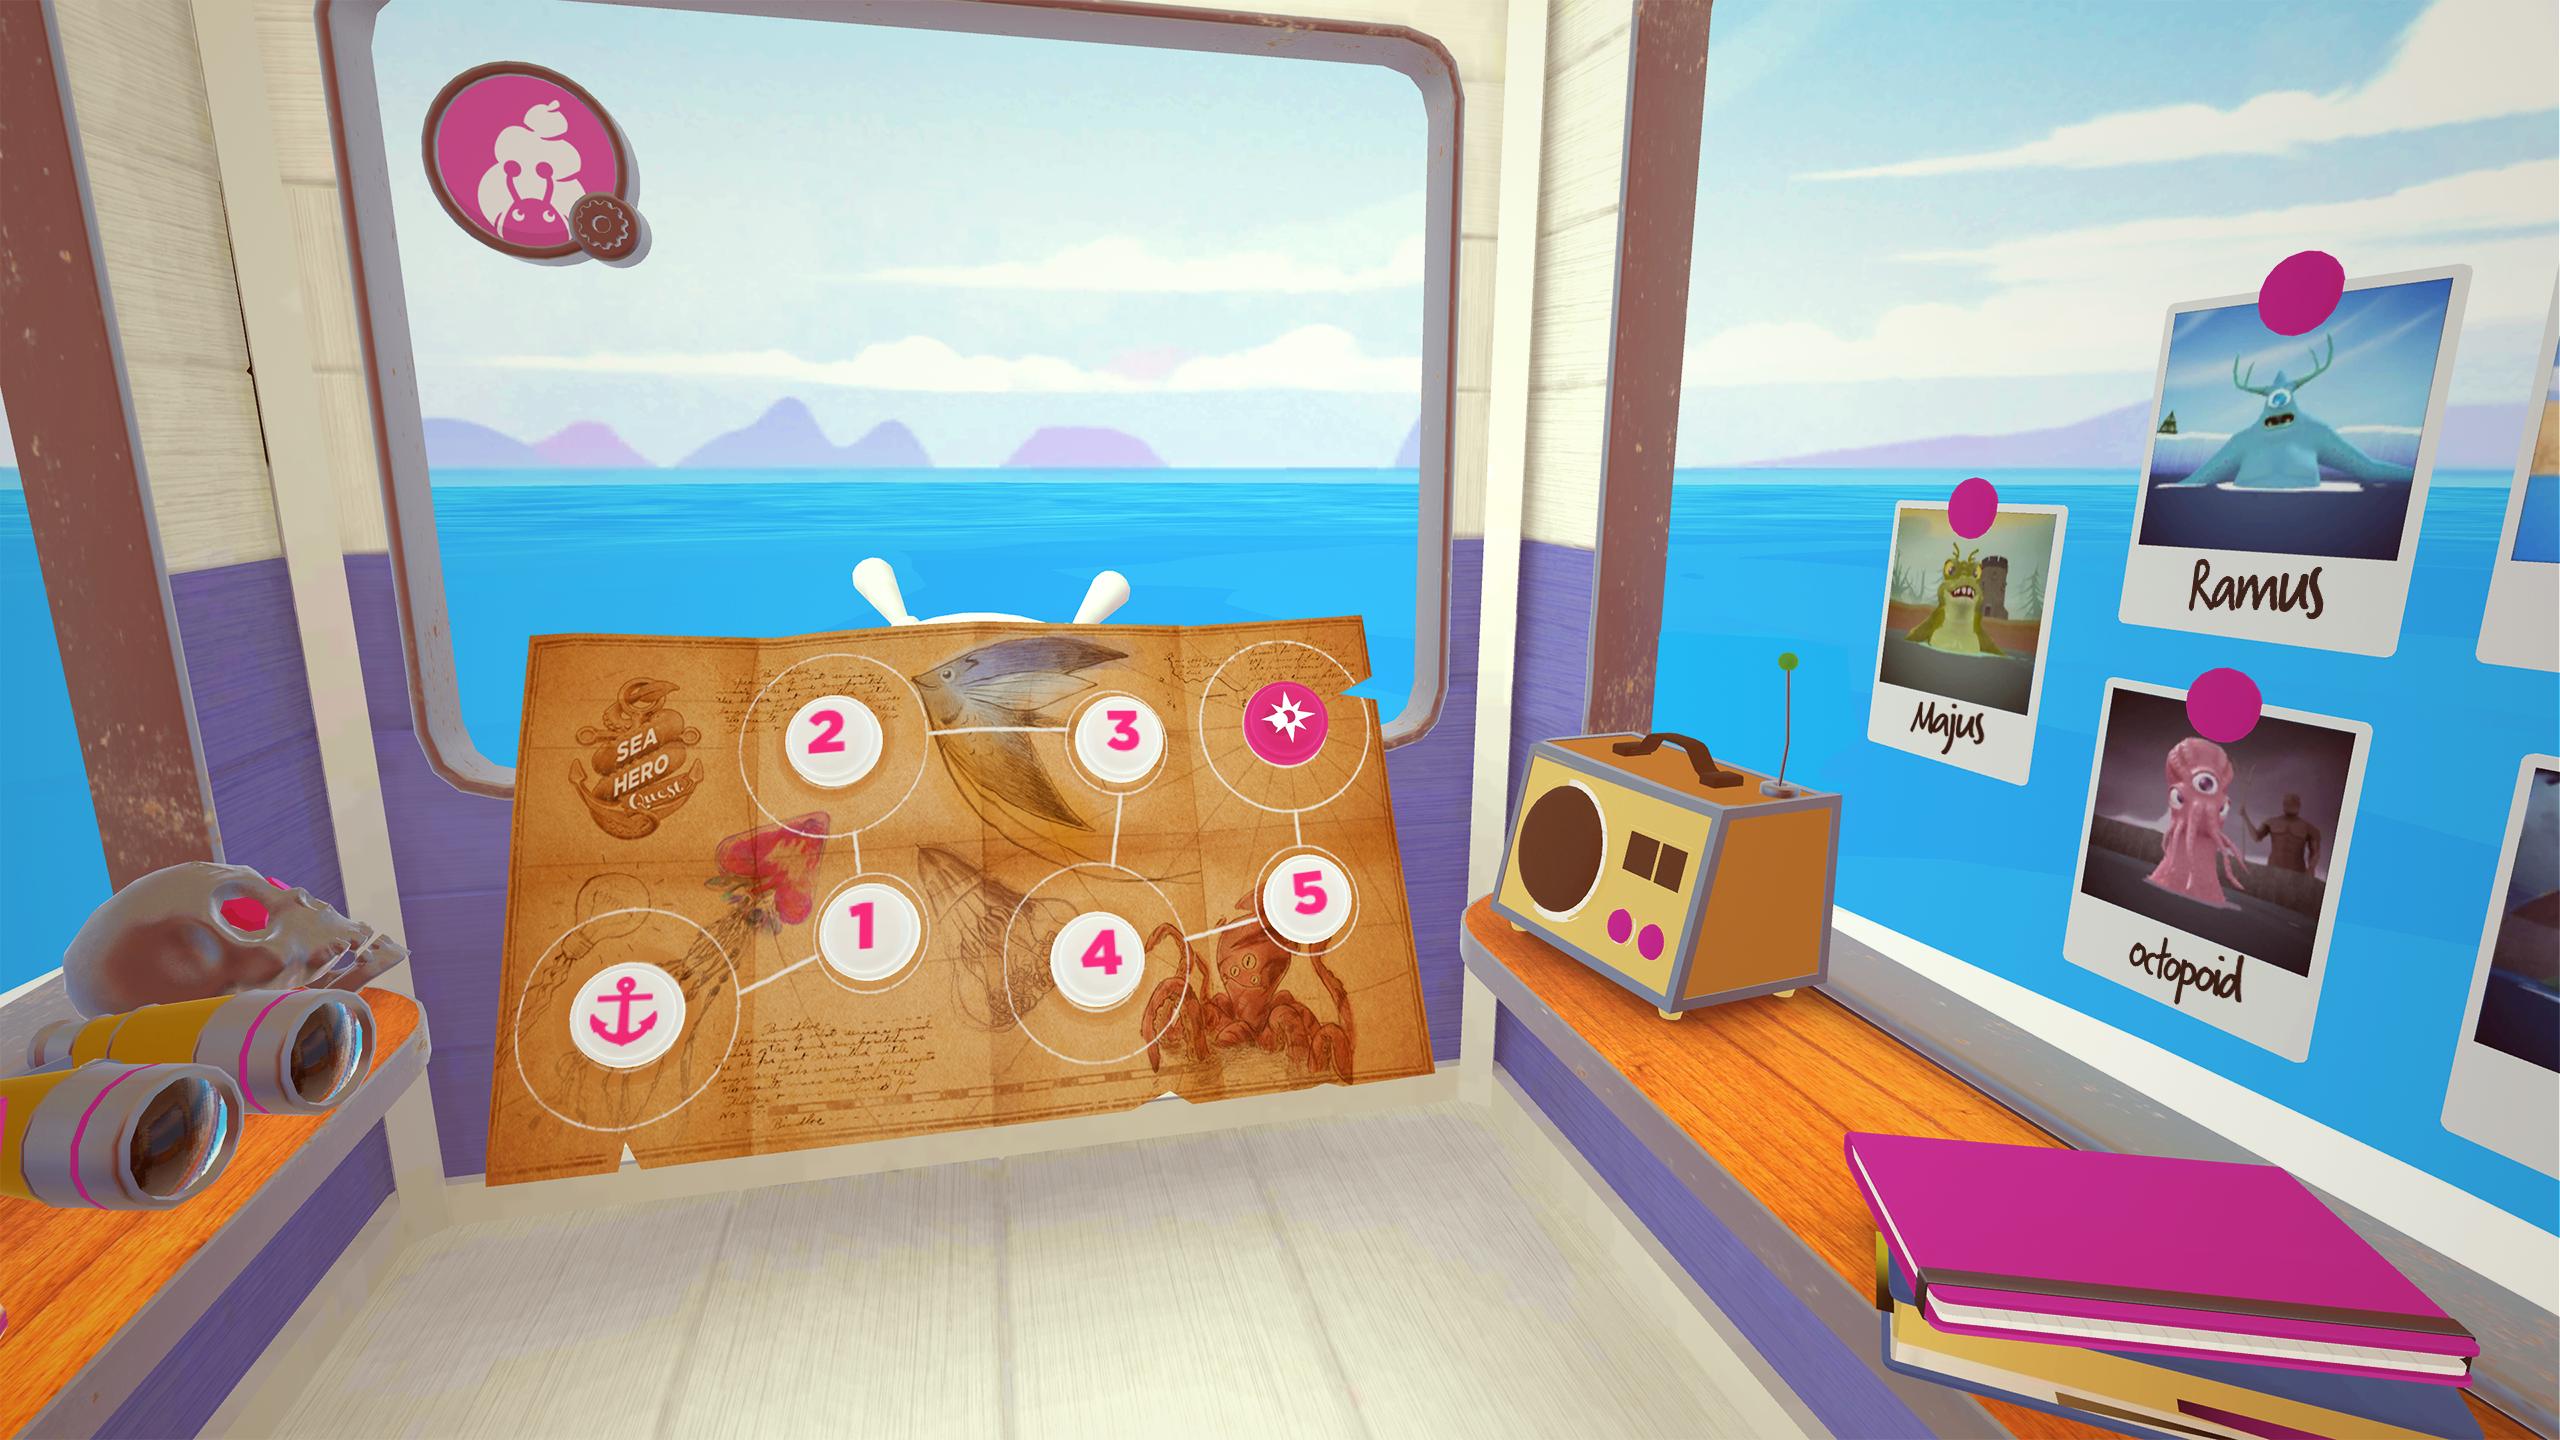 Игра обследование. Sea Hero Quest. Android Quest VR. VR Quest 2 игры головоломки. Игра с равной жизнью.